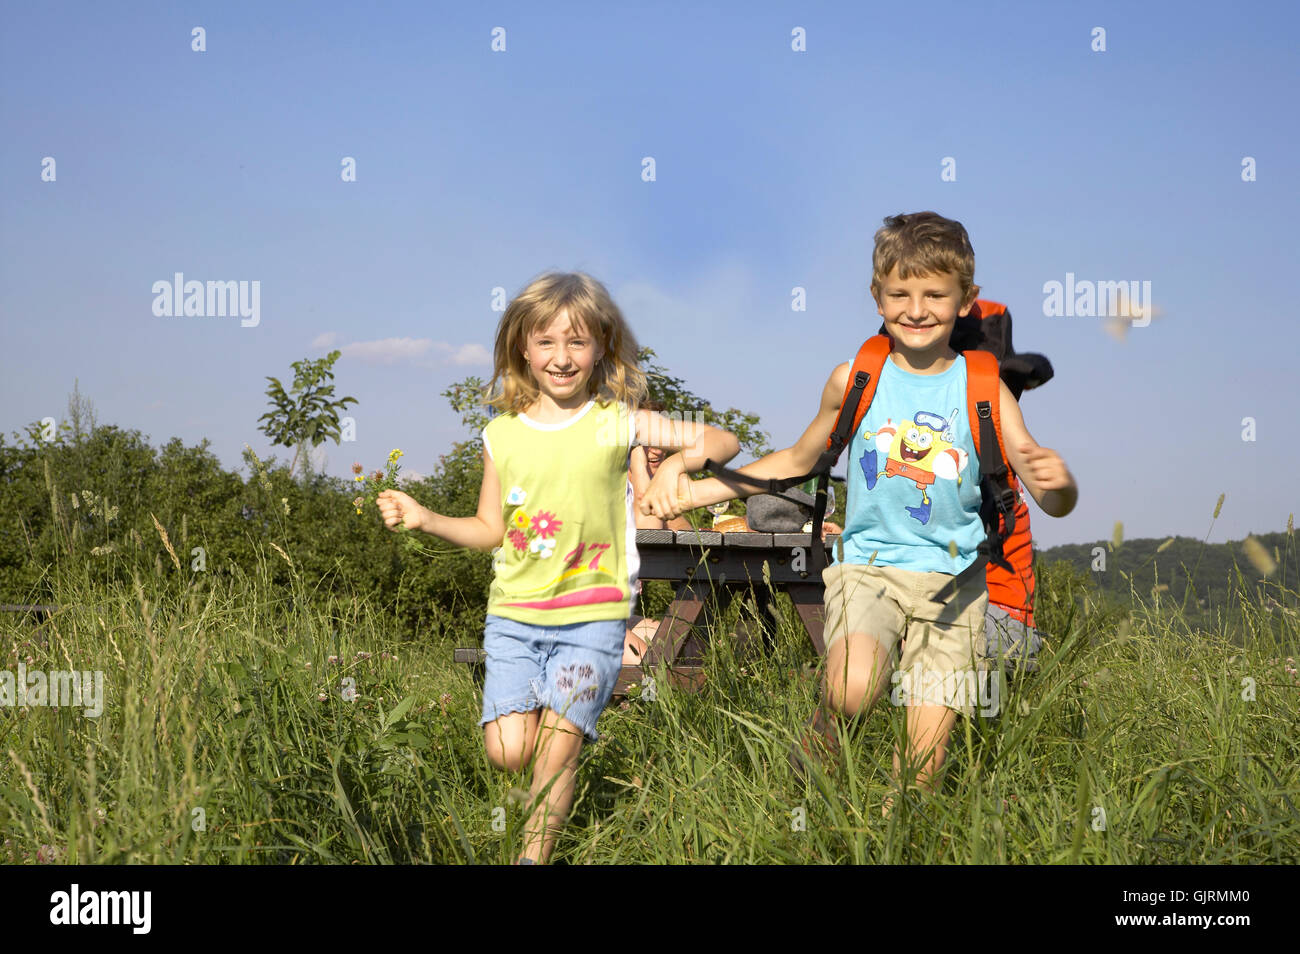 running children Stock Photo